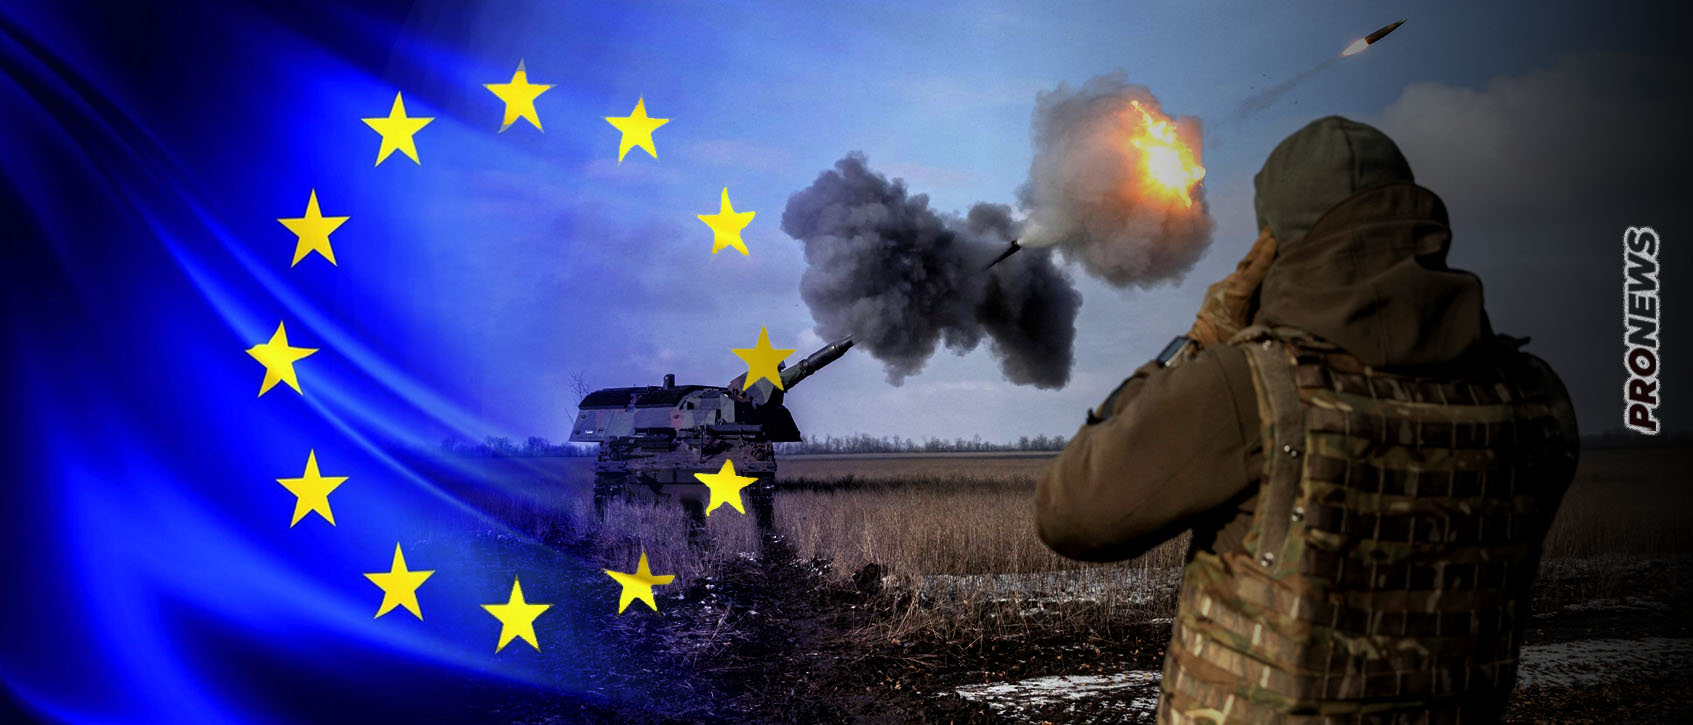 Η ΕΕ χρηματοδοτεί με 80 εκατομμύρια ευρώ τα ΕΑΣ για να κατασκευάσουν πυρομαχικά που θα σκοτώνουν Ρώσους